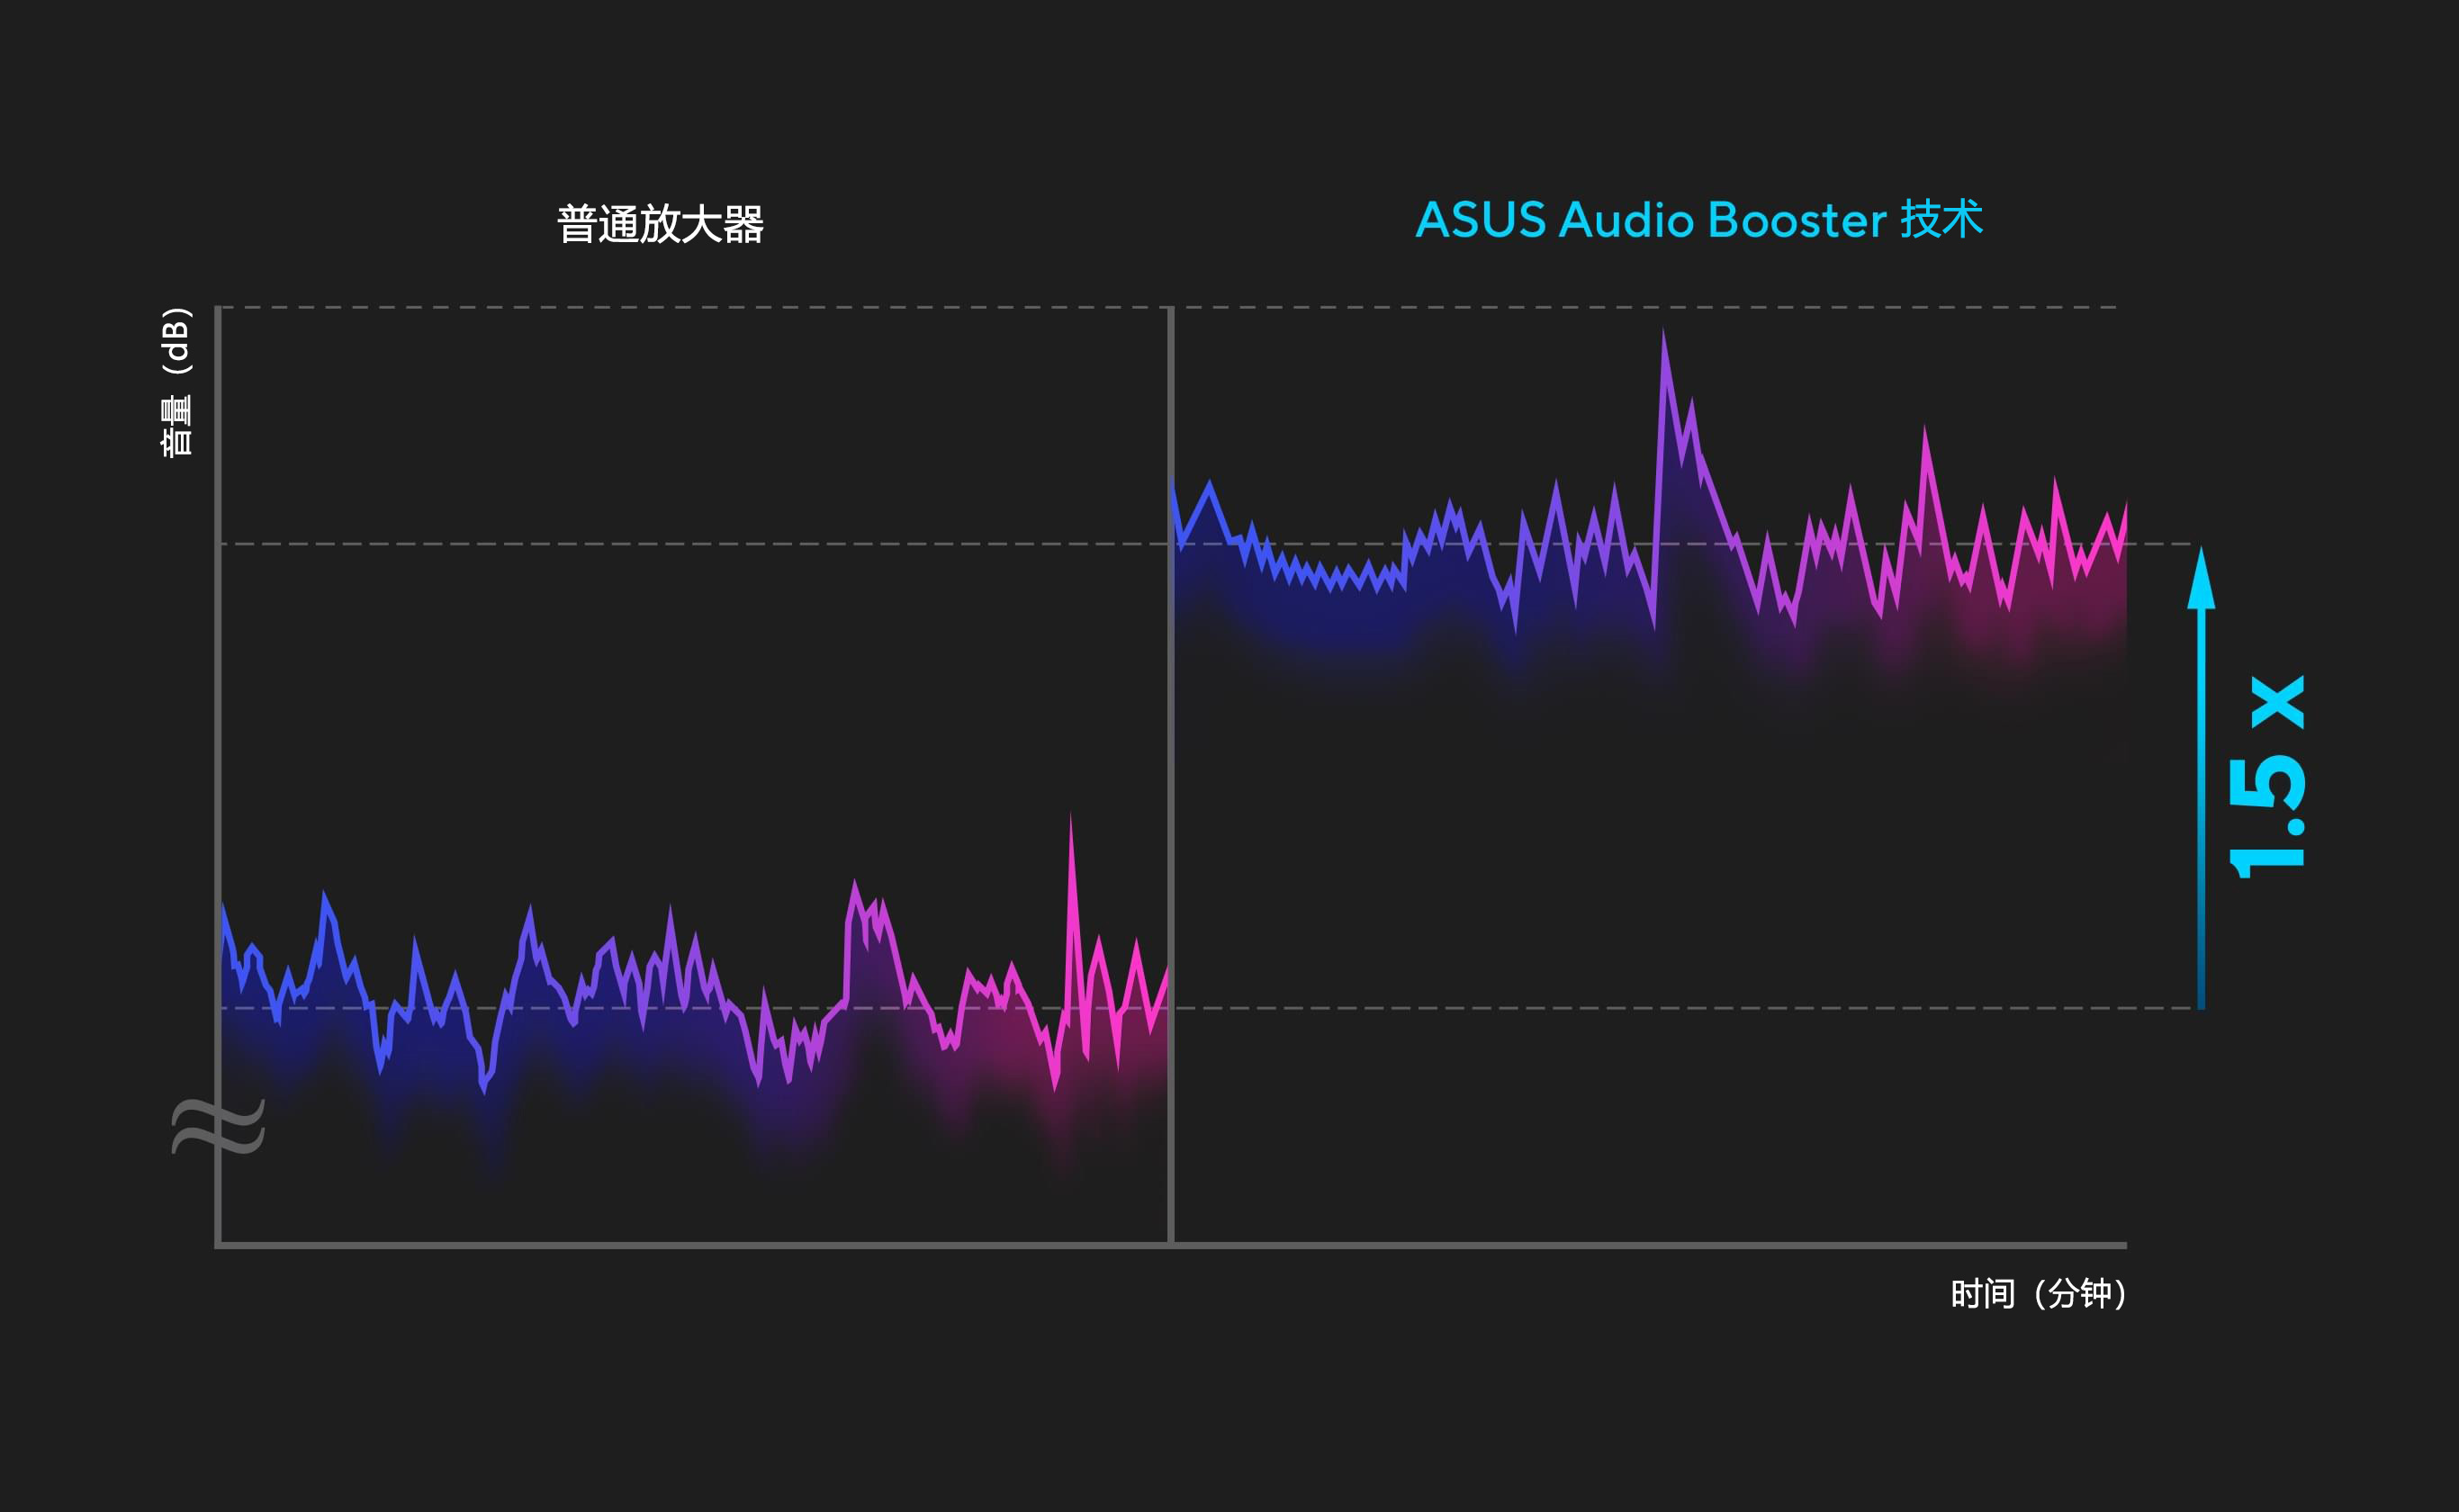  ASUS Audio Booster 的波形比一般放大器的振幅高1.5 倍